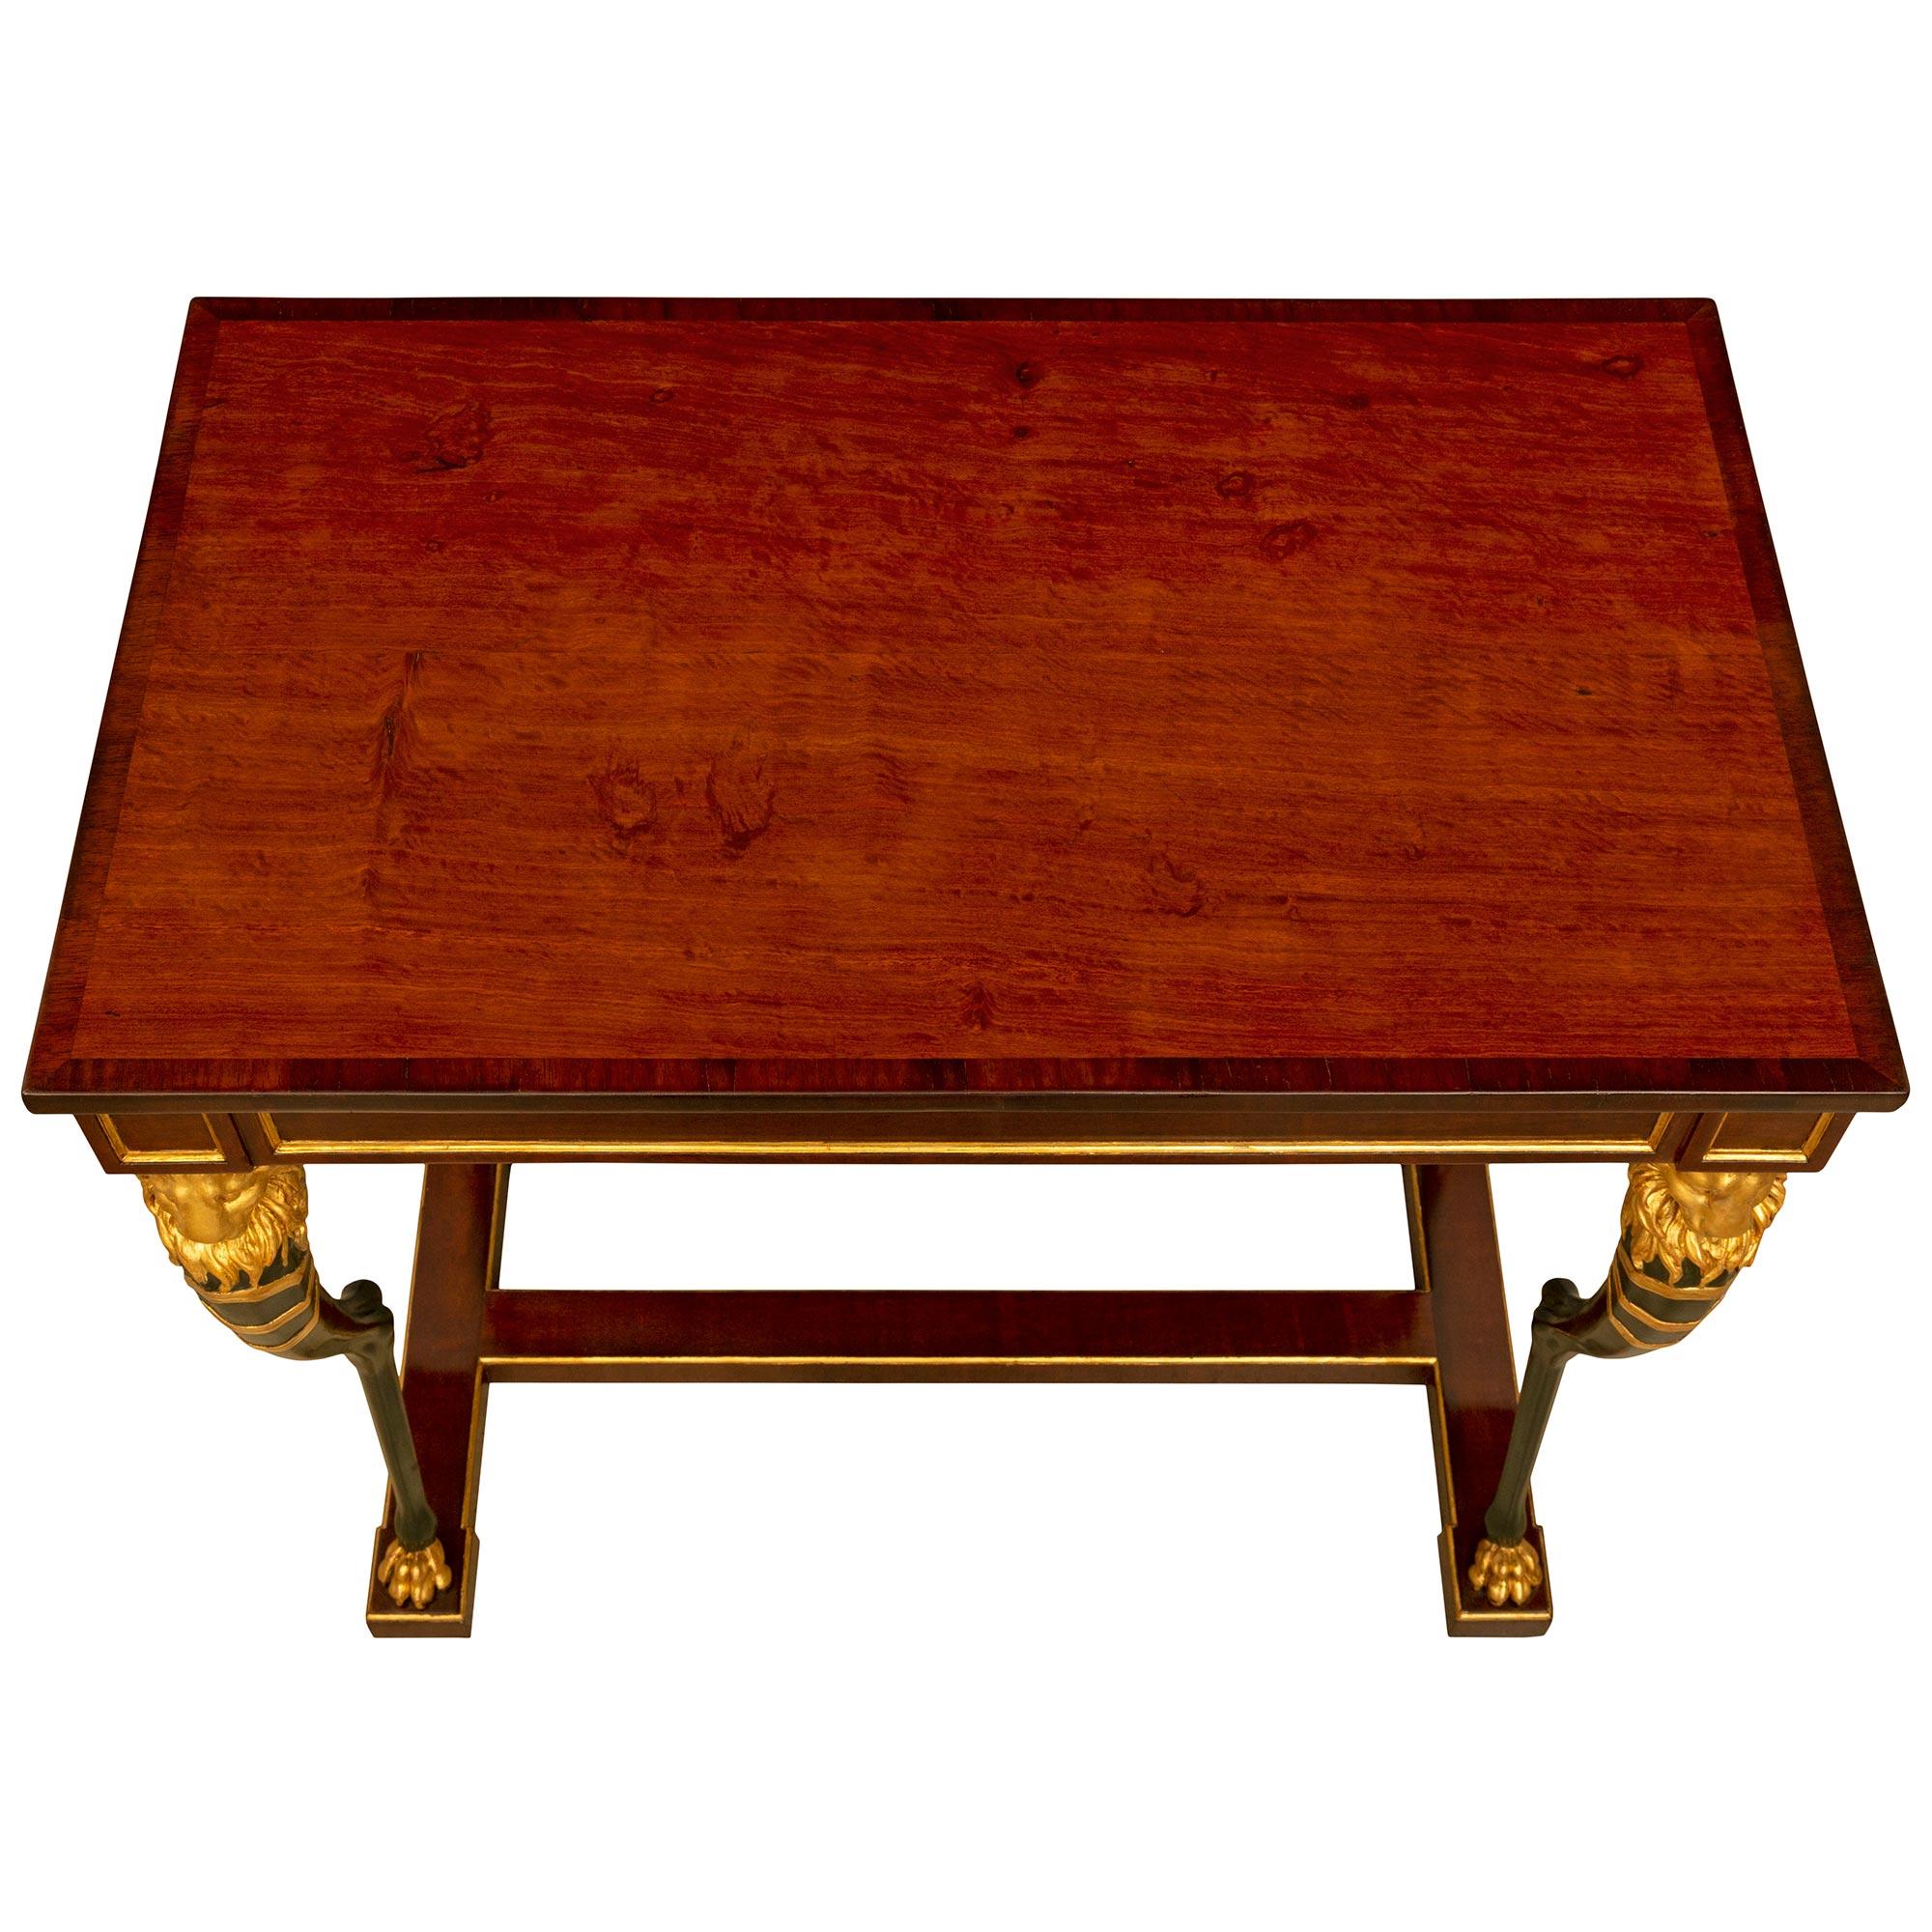 Remarquable et très élégante table centrale de style Empire suédois du XIXe siècle en acajou, polychrome et bois doré. La table rectangulaire est surélevée par une élégante traverse inférieure en acajou en forme de H avec une fine bordure de bois